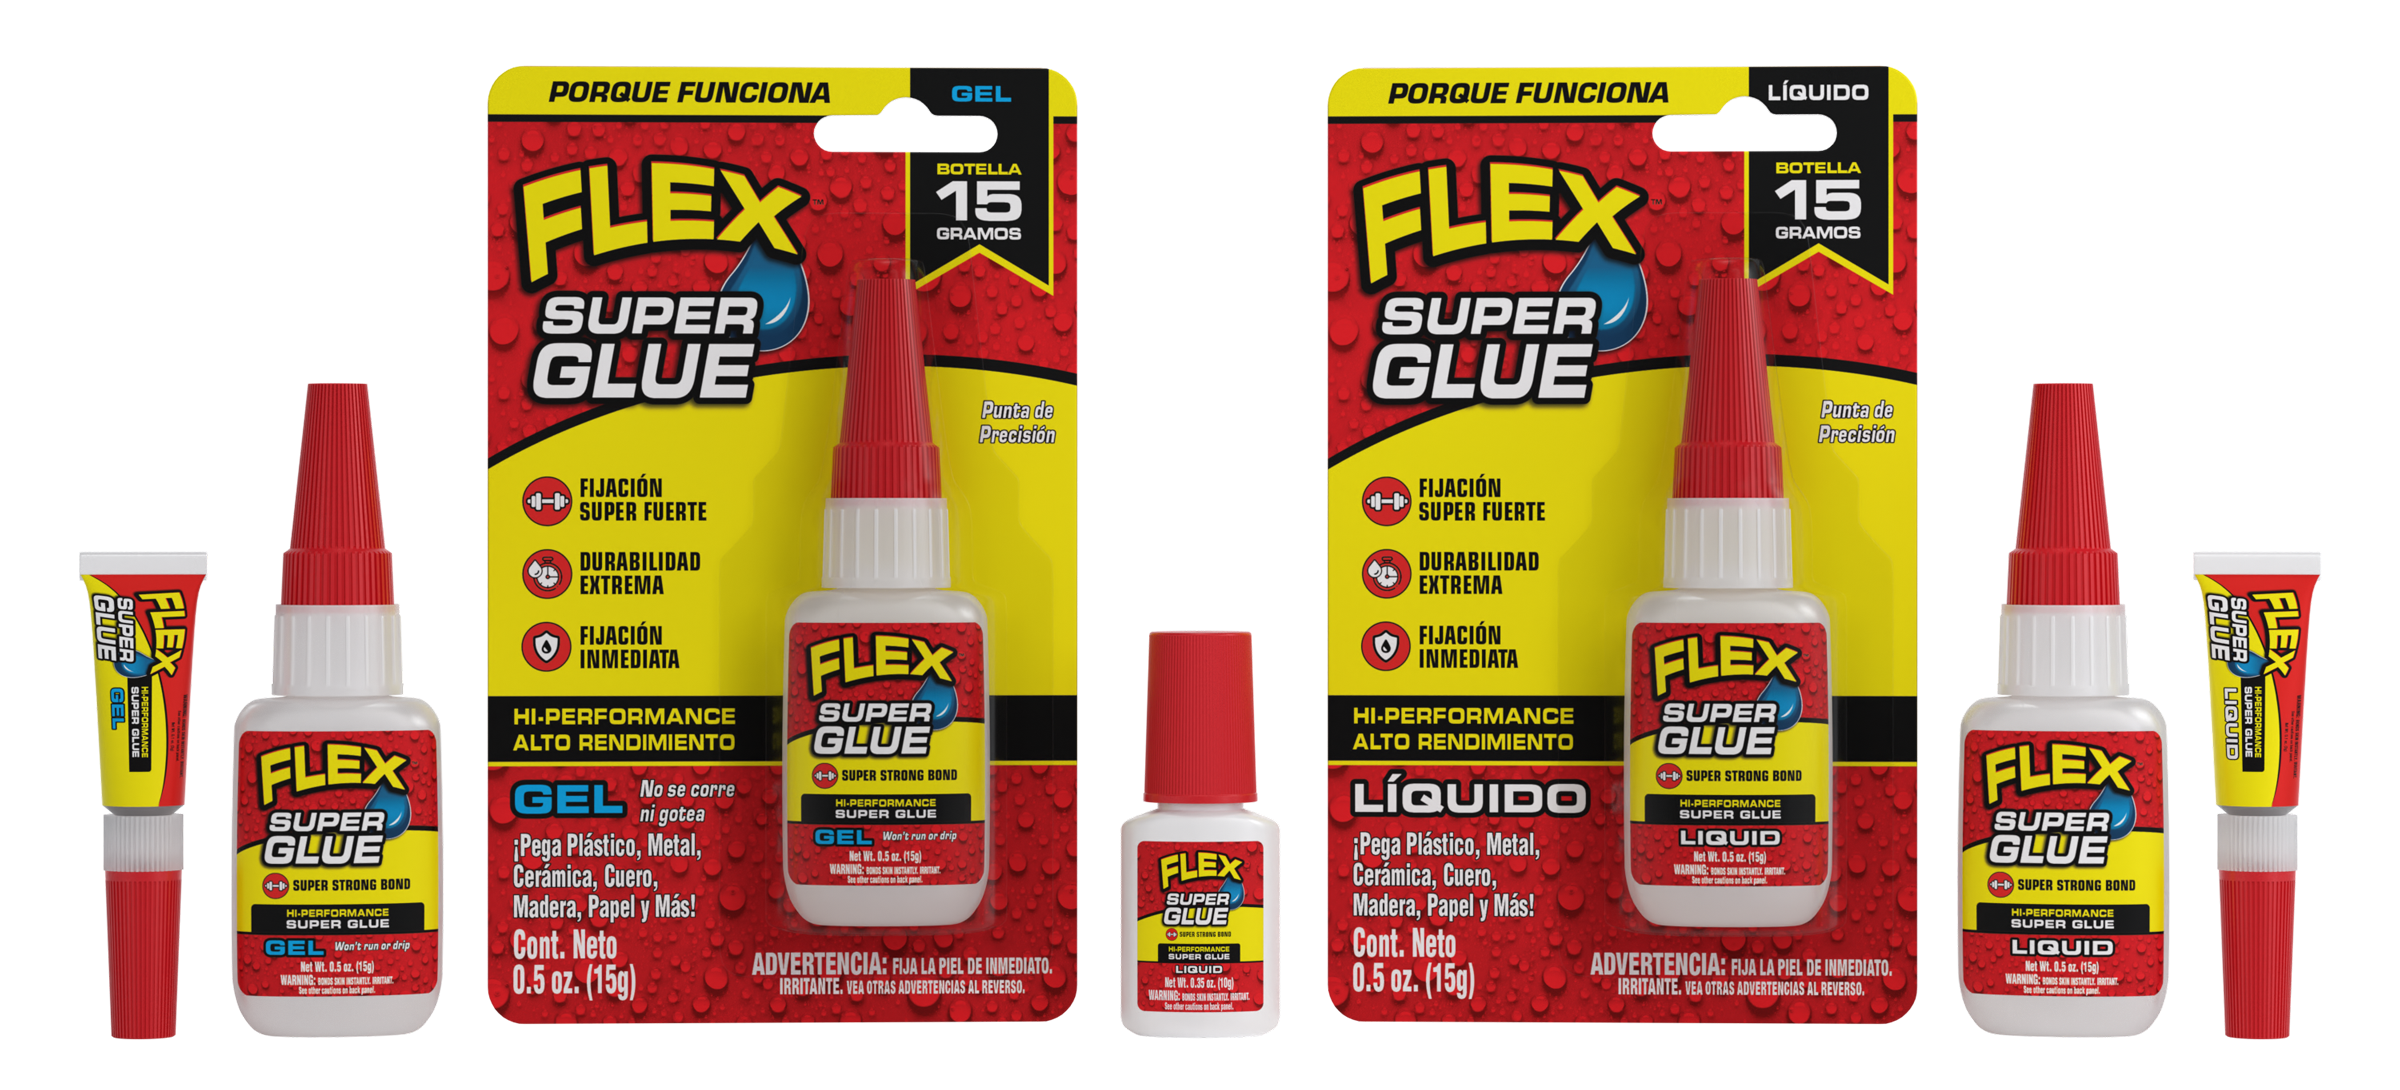 Flex Super Glue ahora en Mexico